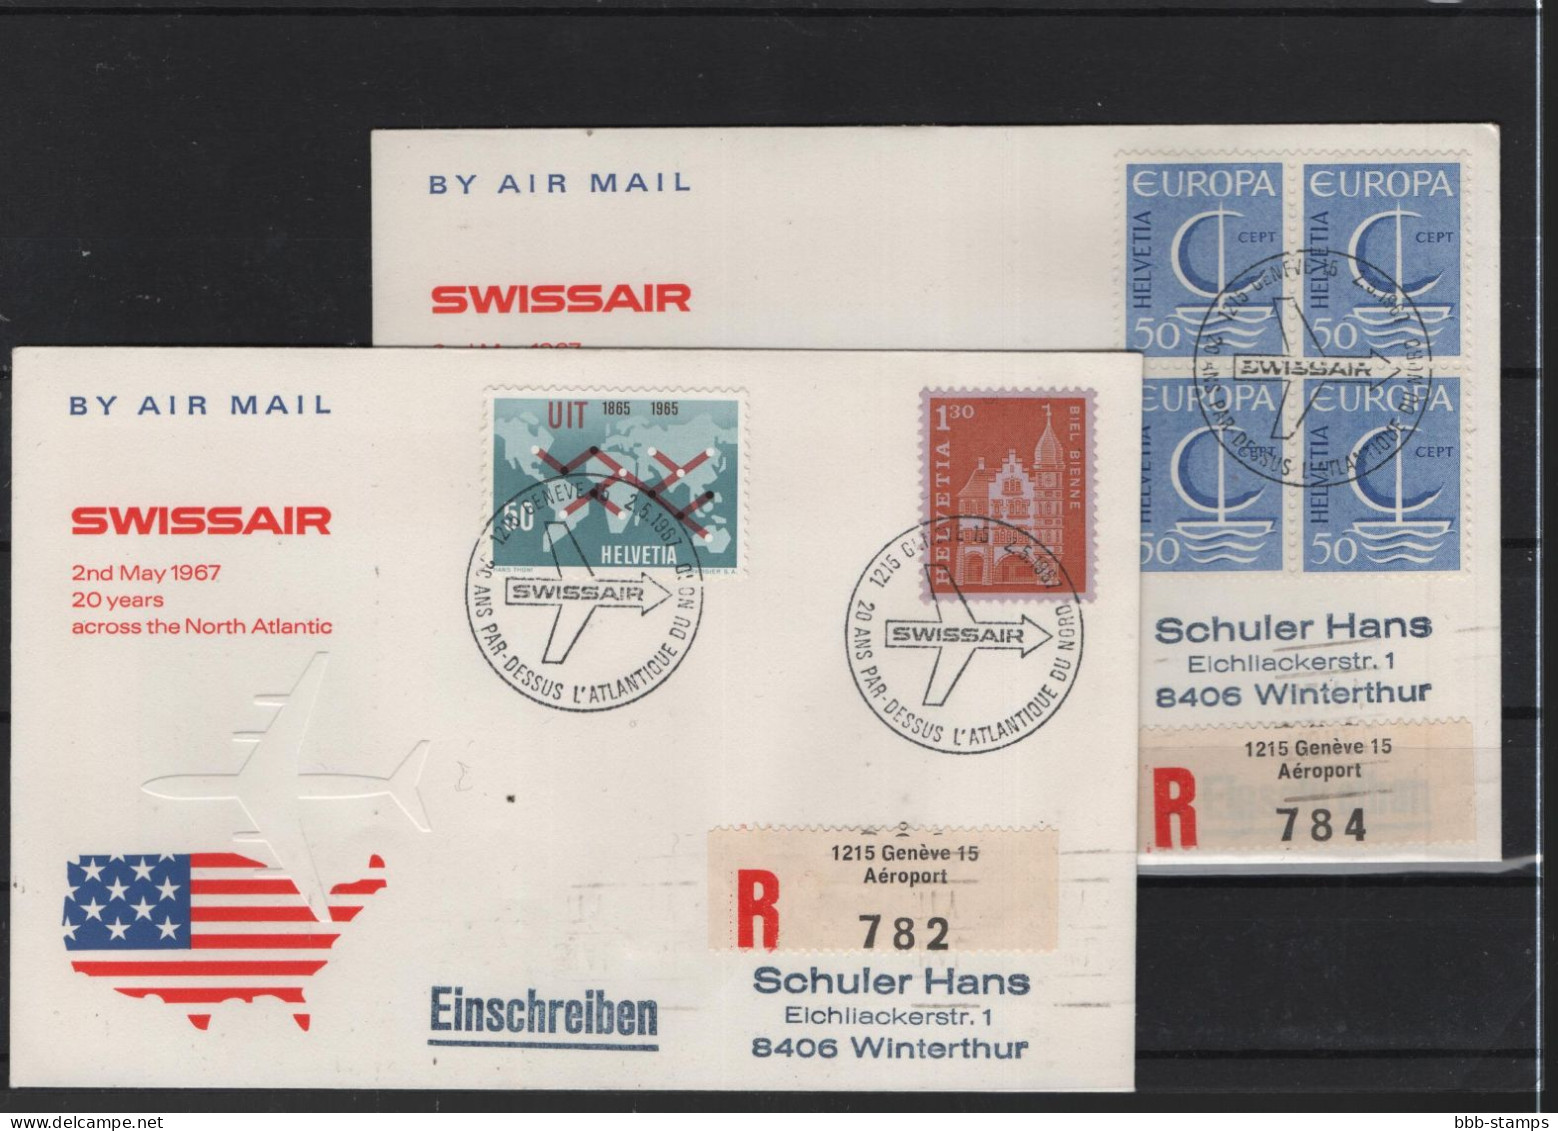 Schweiz Air Mail Swissair  FFC  2.5.1967 Zürich - New York VV - First Flight Covers